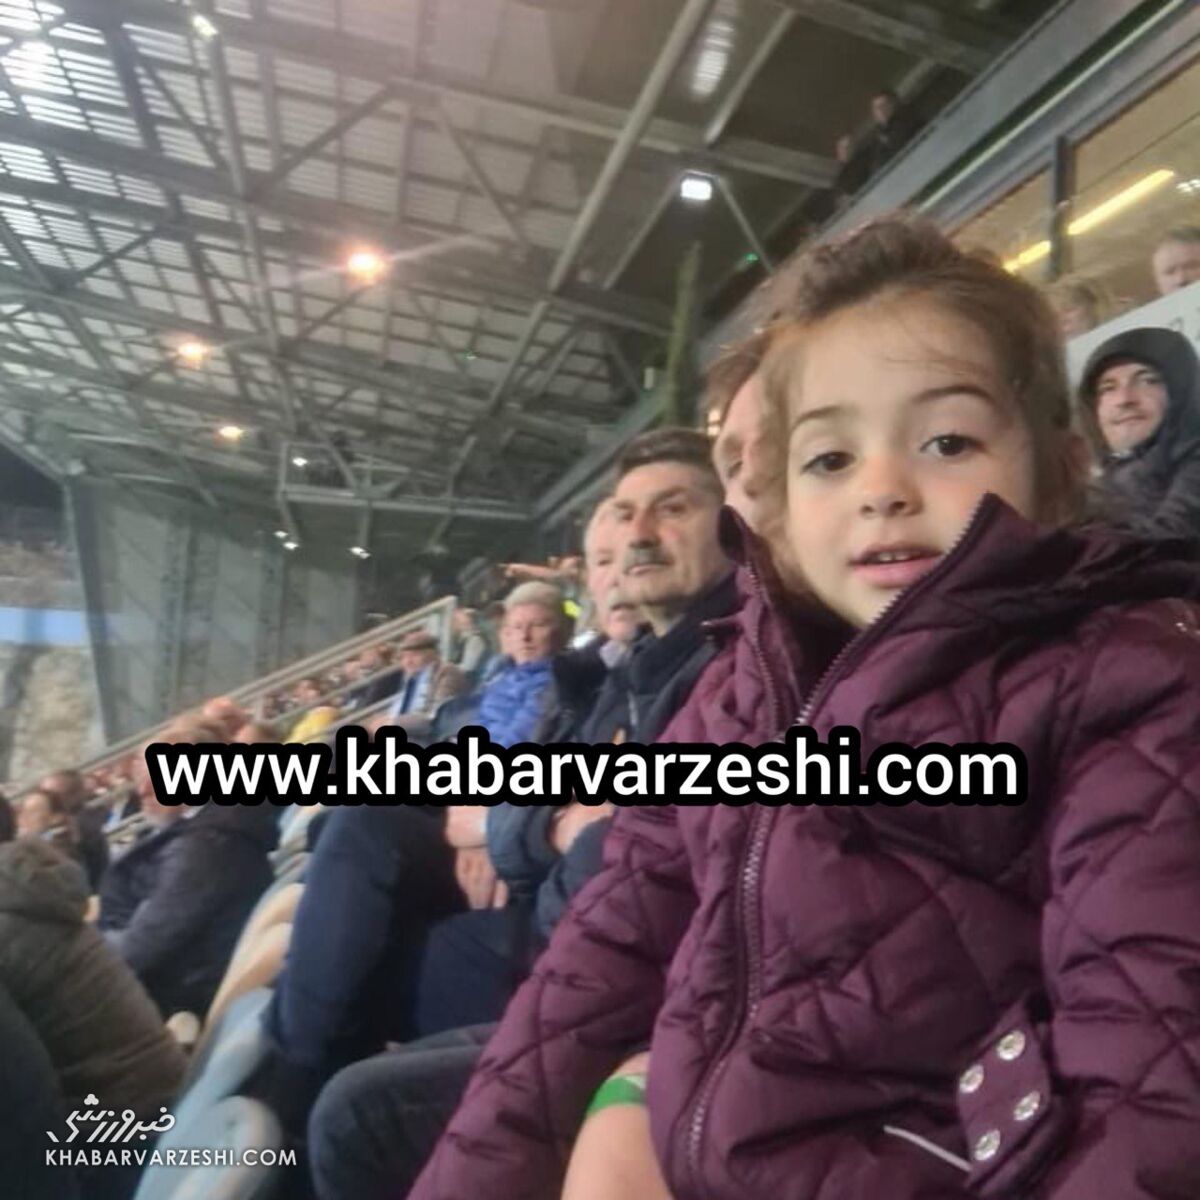 تصویر اختصاصی از دختر کوچک سرمربی تیم ملی ایران در ورزشگاه/ حمایت اسکوچیچ از تیم سابقش در کرواسی